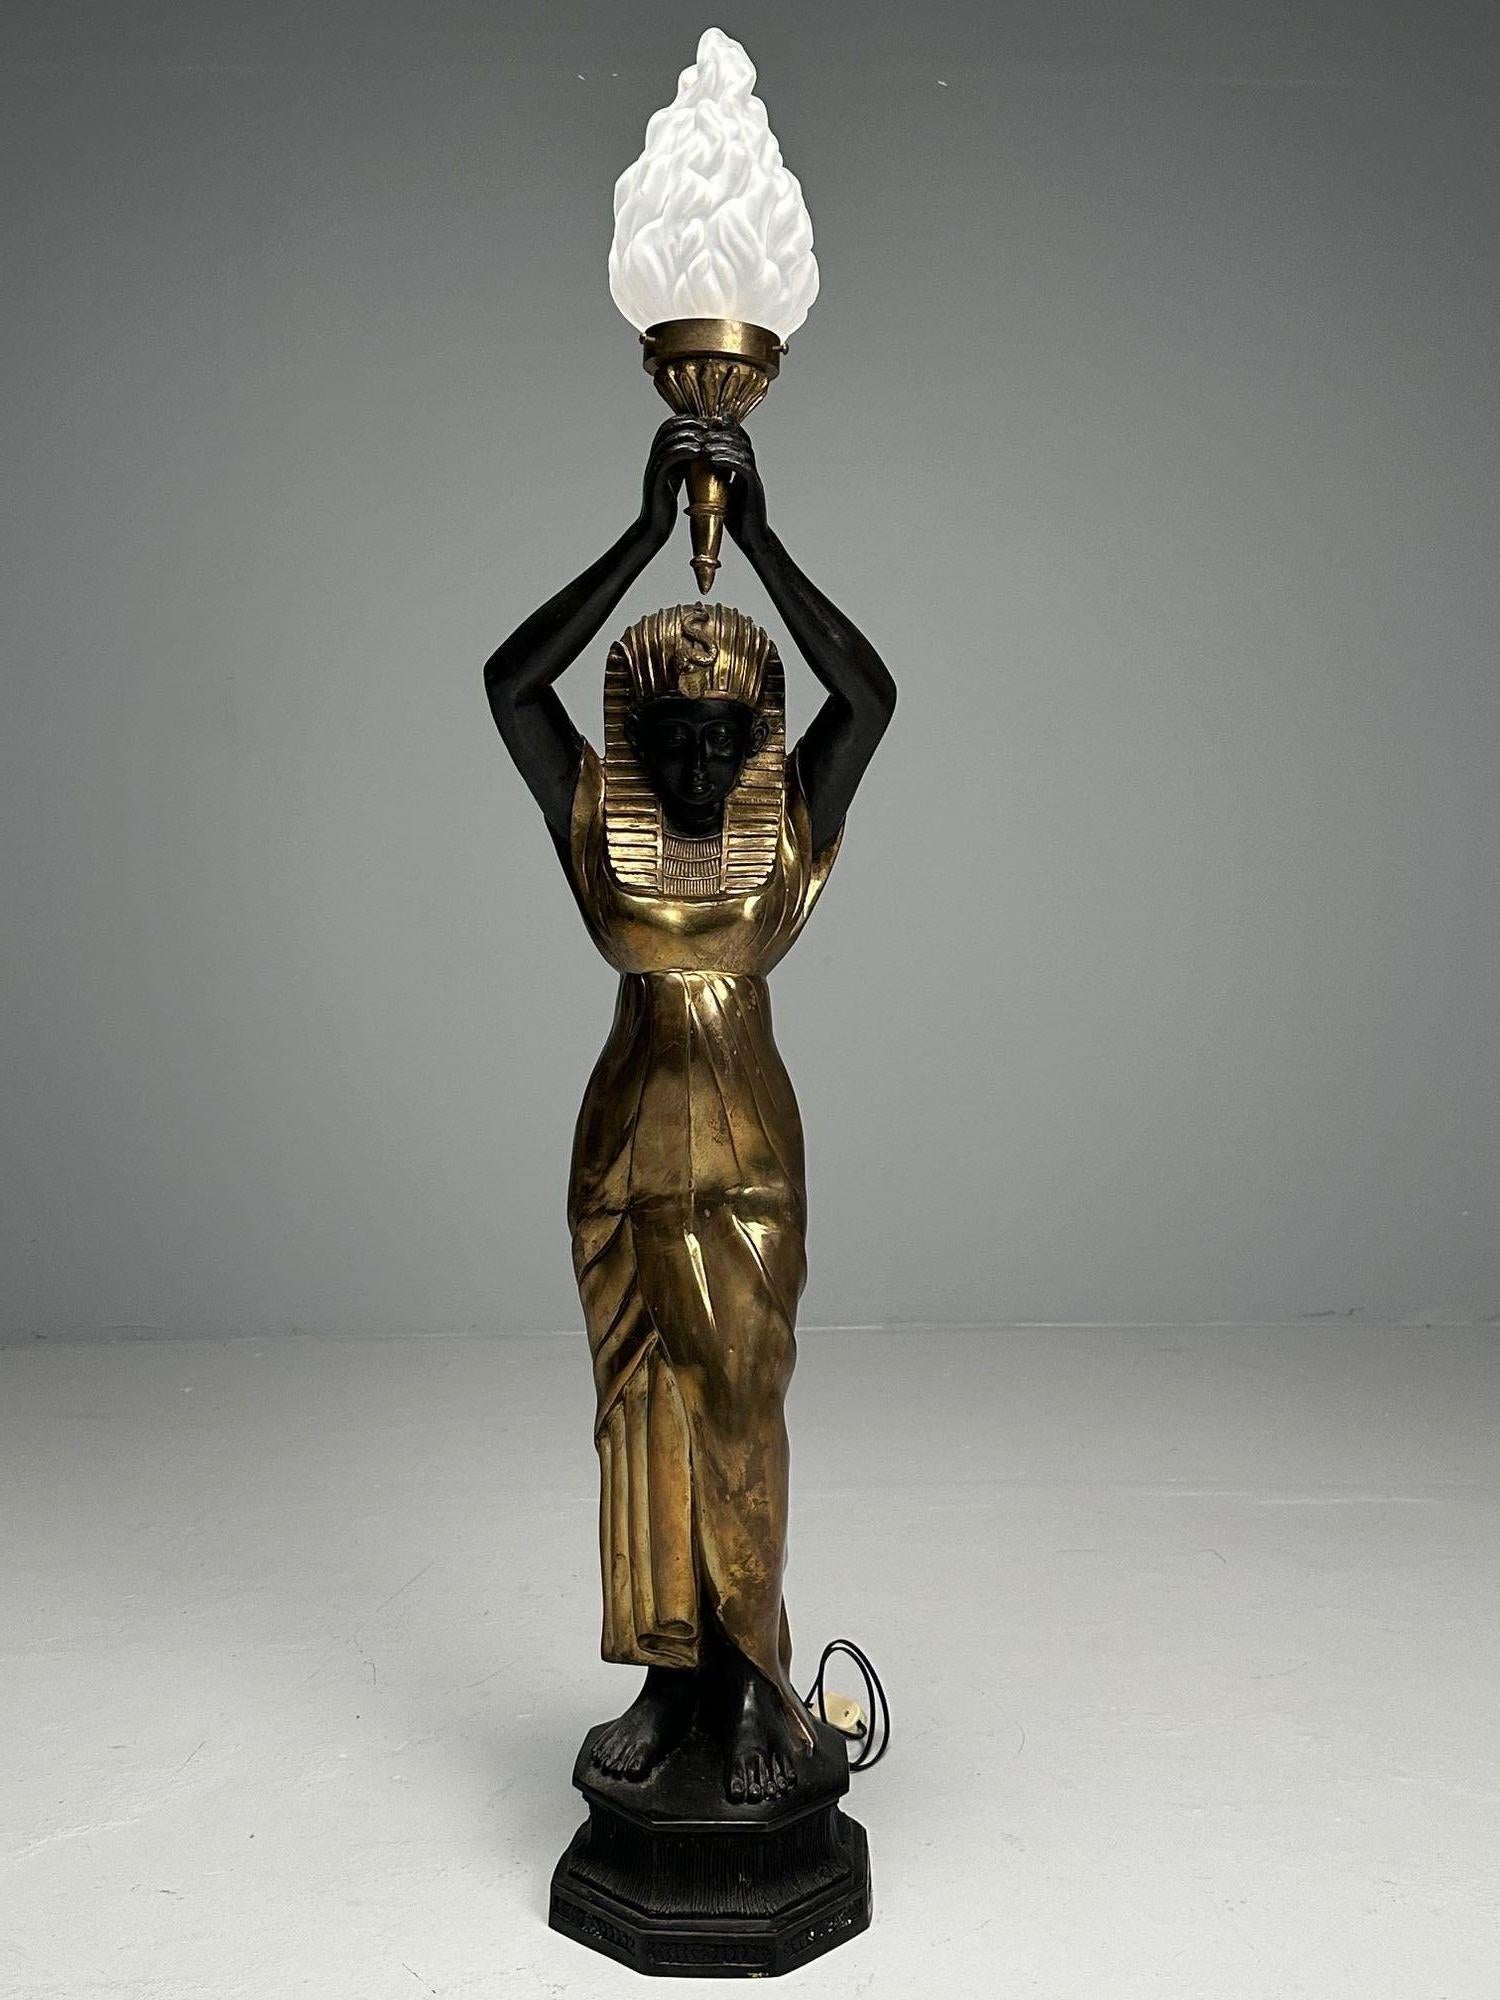 Stehlampe im Regency-Stil mit ägyptischem Motiv, vergoldetes Metall, Bronze, 1990er Jahre

Eine atemberaubende nubische ägyptische Göttin aus vergoldetem Metall und Ebenholz, die einen Globus im Stil von Lalique hält, der eine Glühbirne enthält.